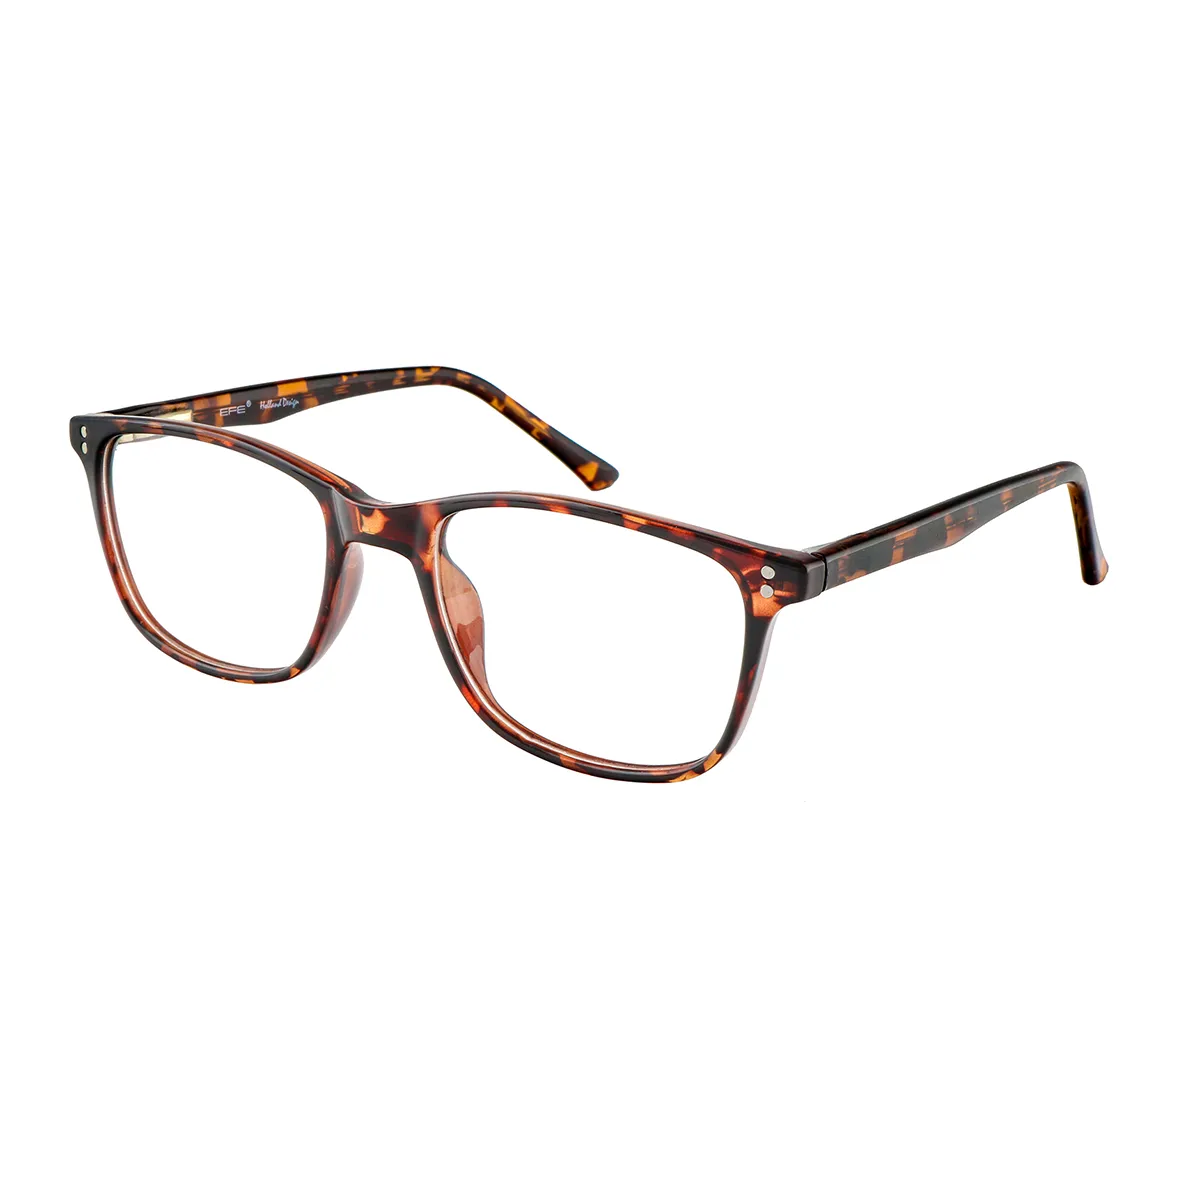 Herron - Square  Glasses for Men & Women